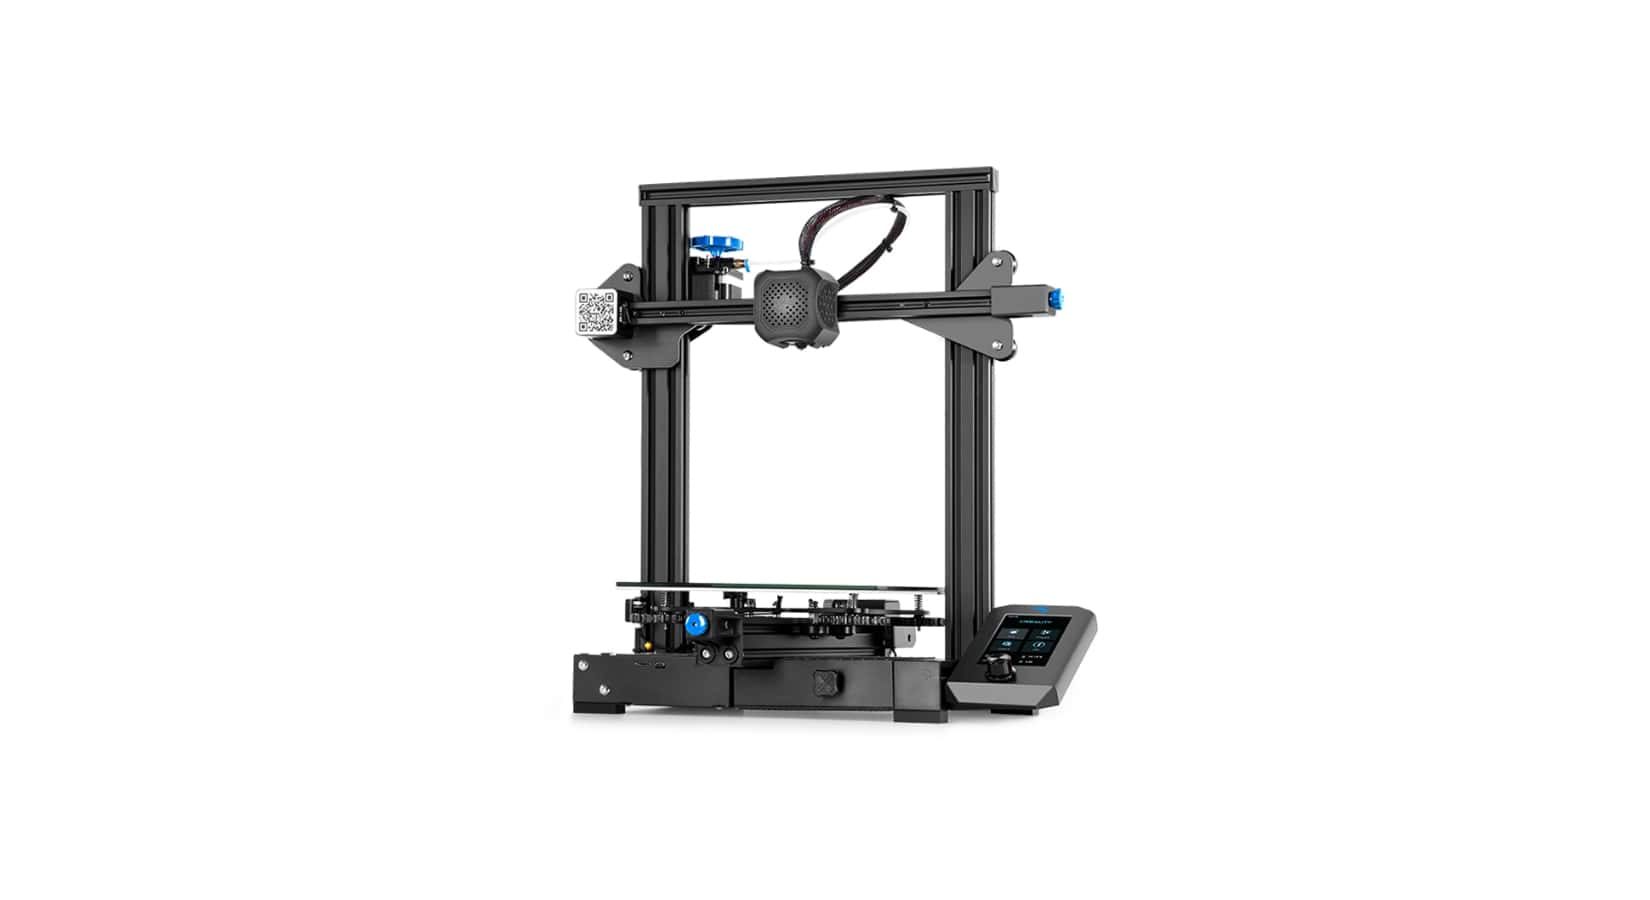 Creality Ender 3 V2: Review the Specs - PrinterMods UK Ltd